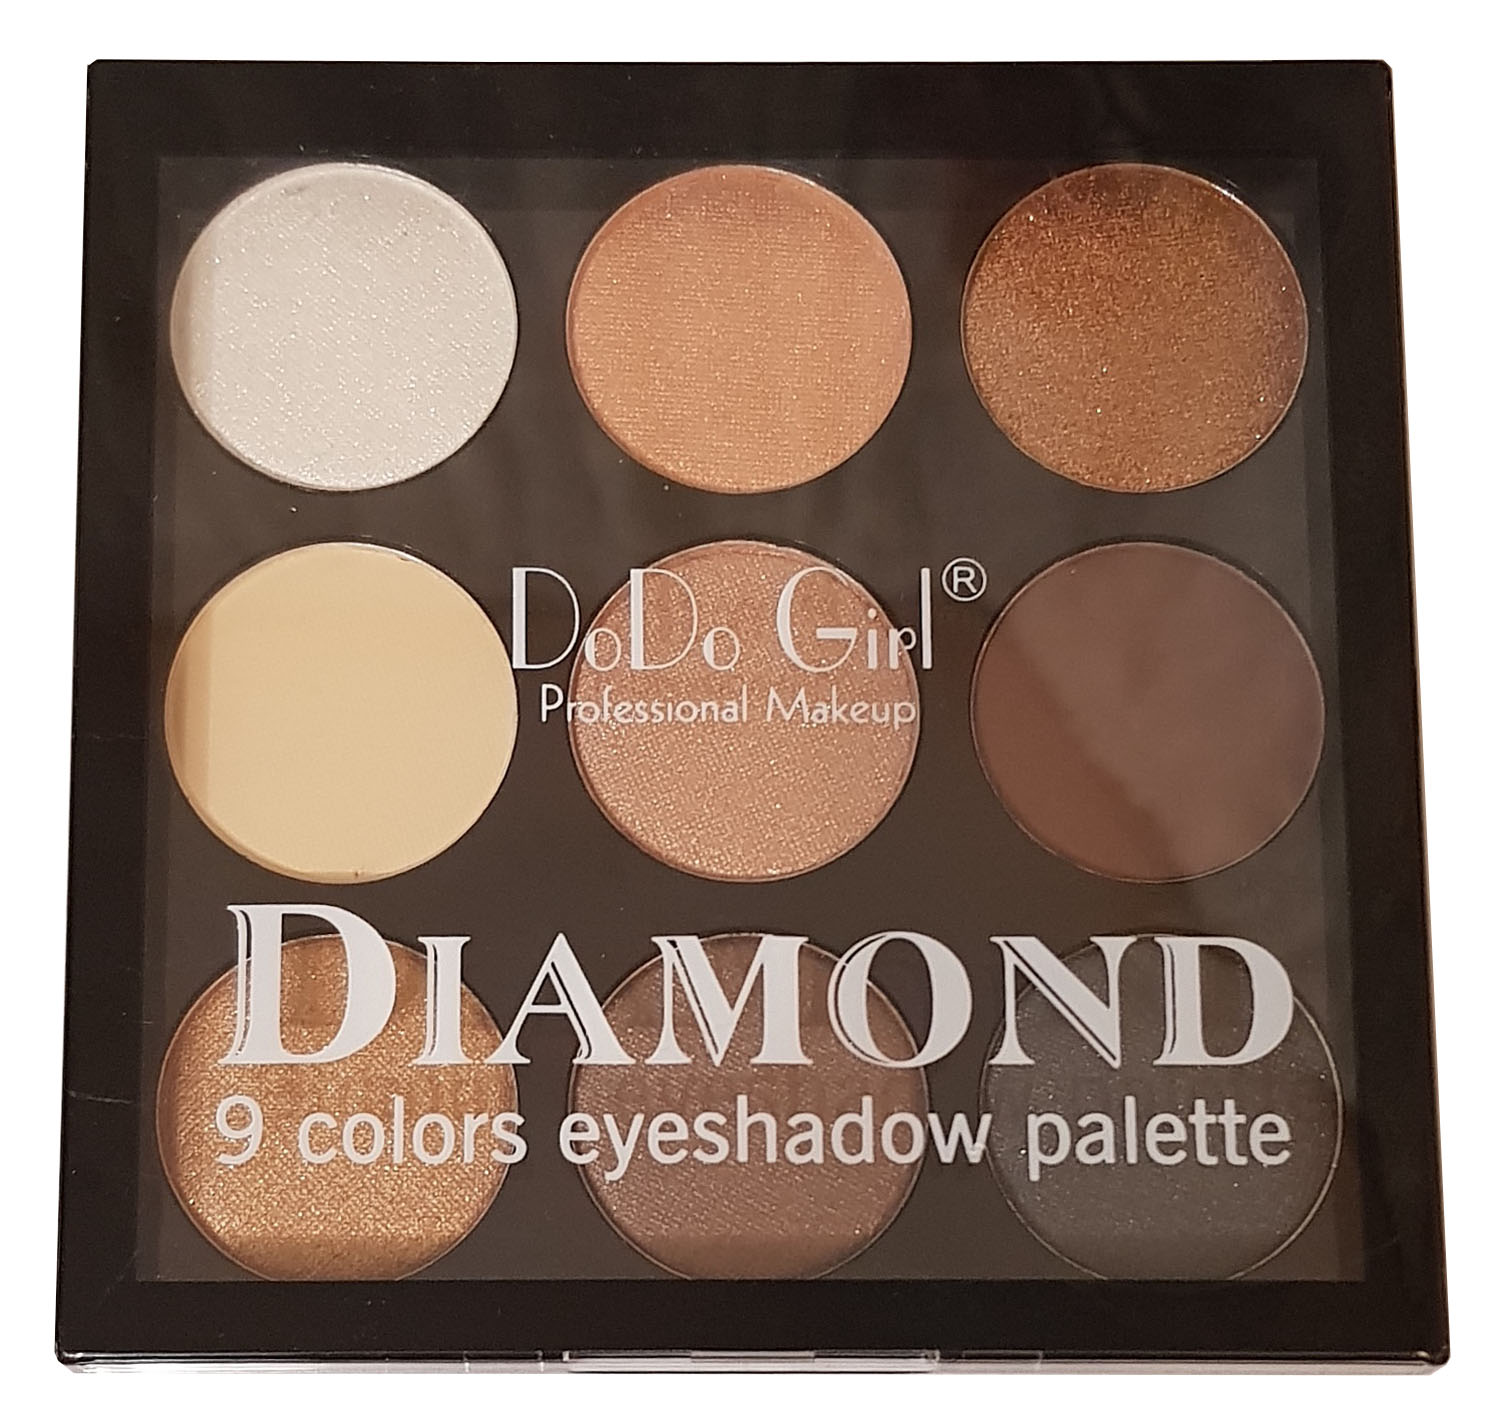 Палетка теней для глаз DoDo Girl Diamond Eyeshadow Palette, 9 оттенков, набор 03 крайон большая книга силы ваши возможности безграничны шмидт тамара